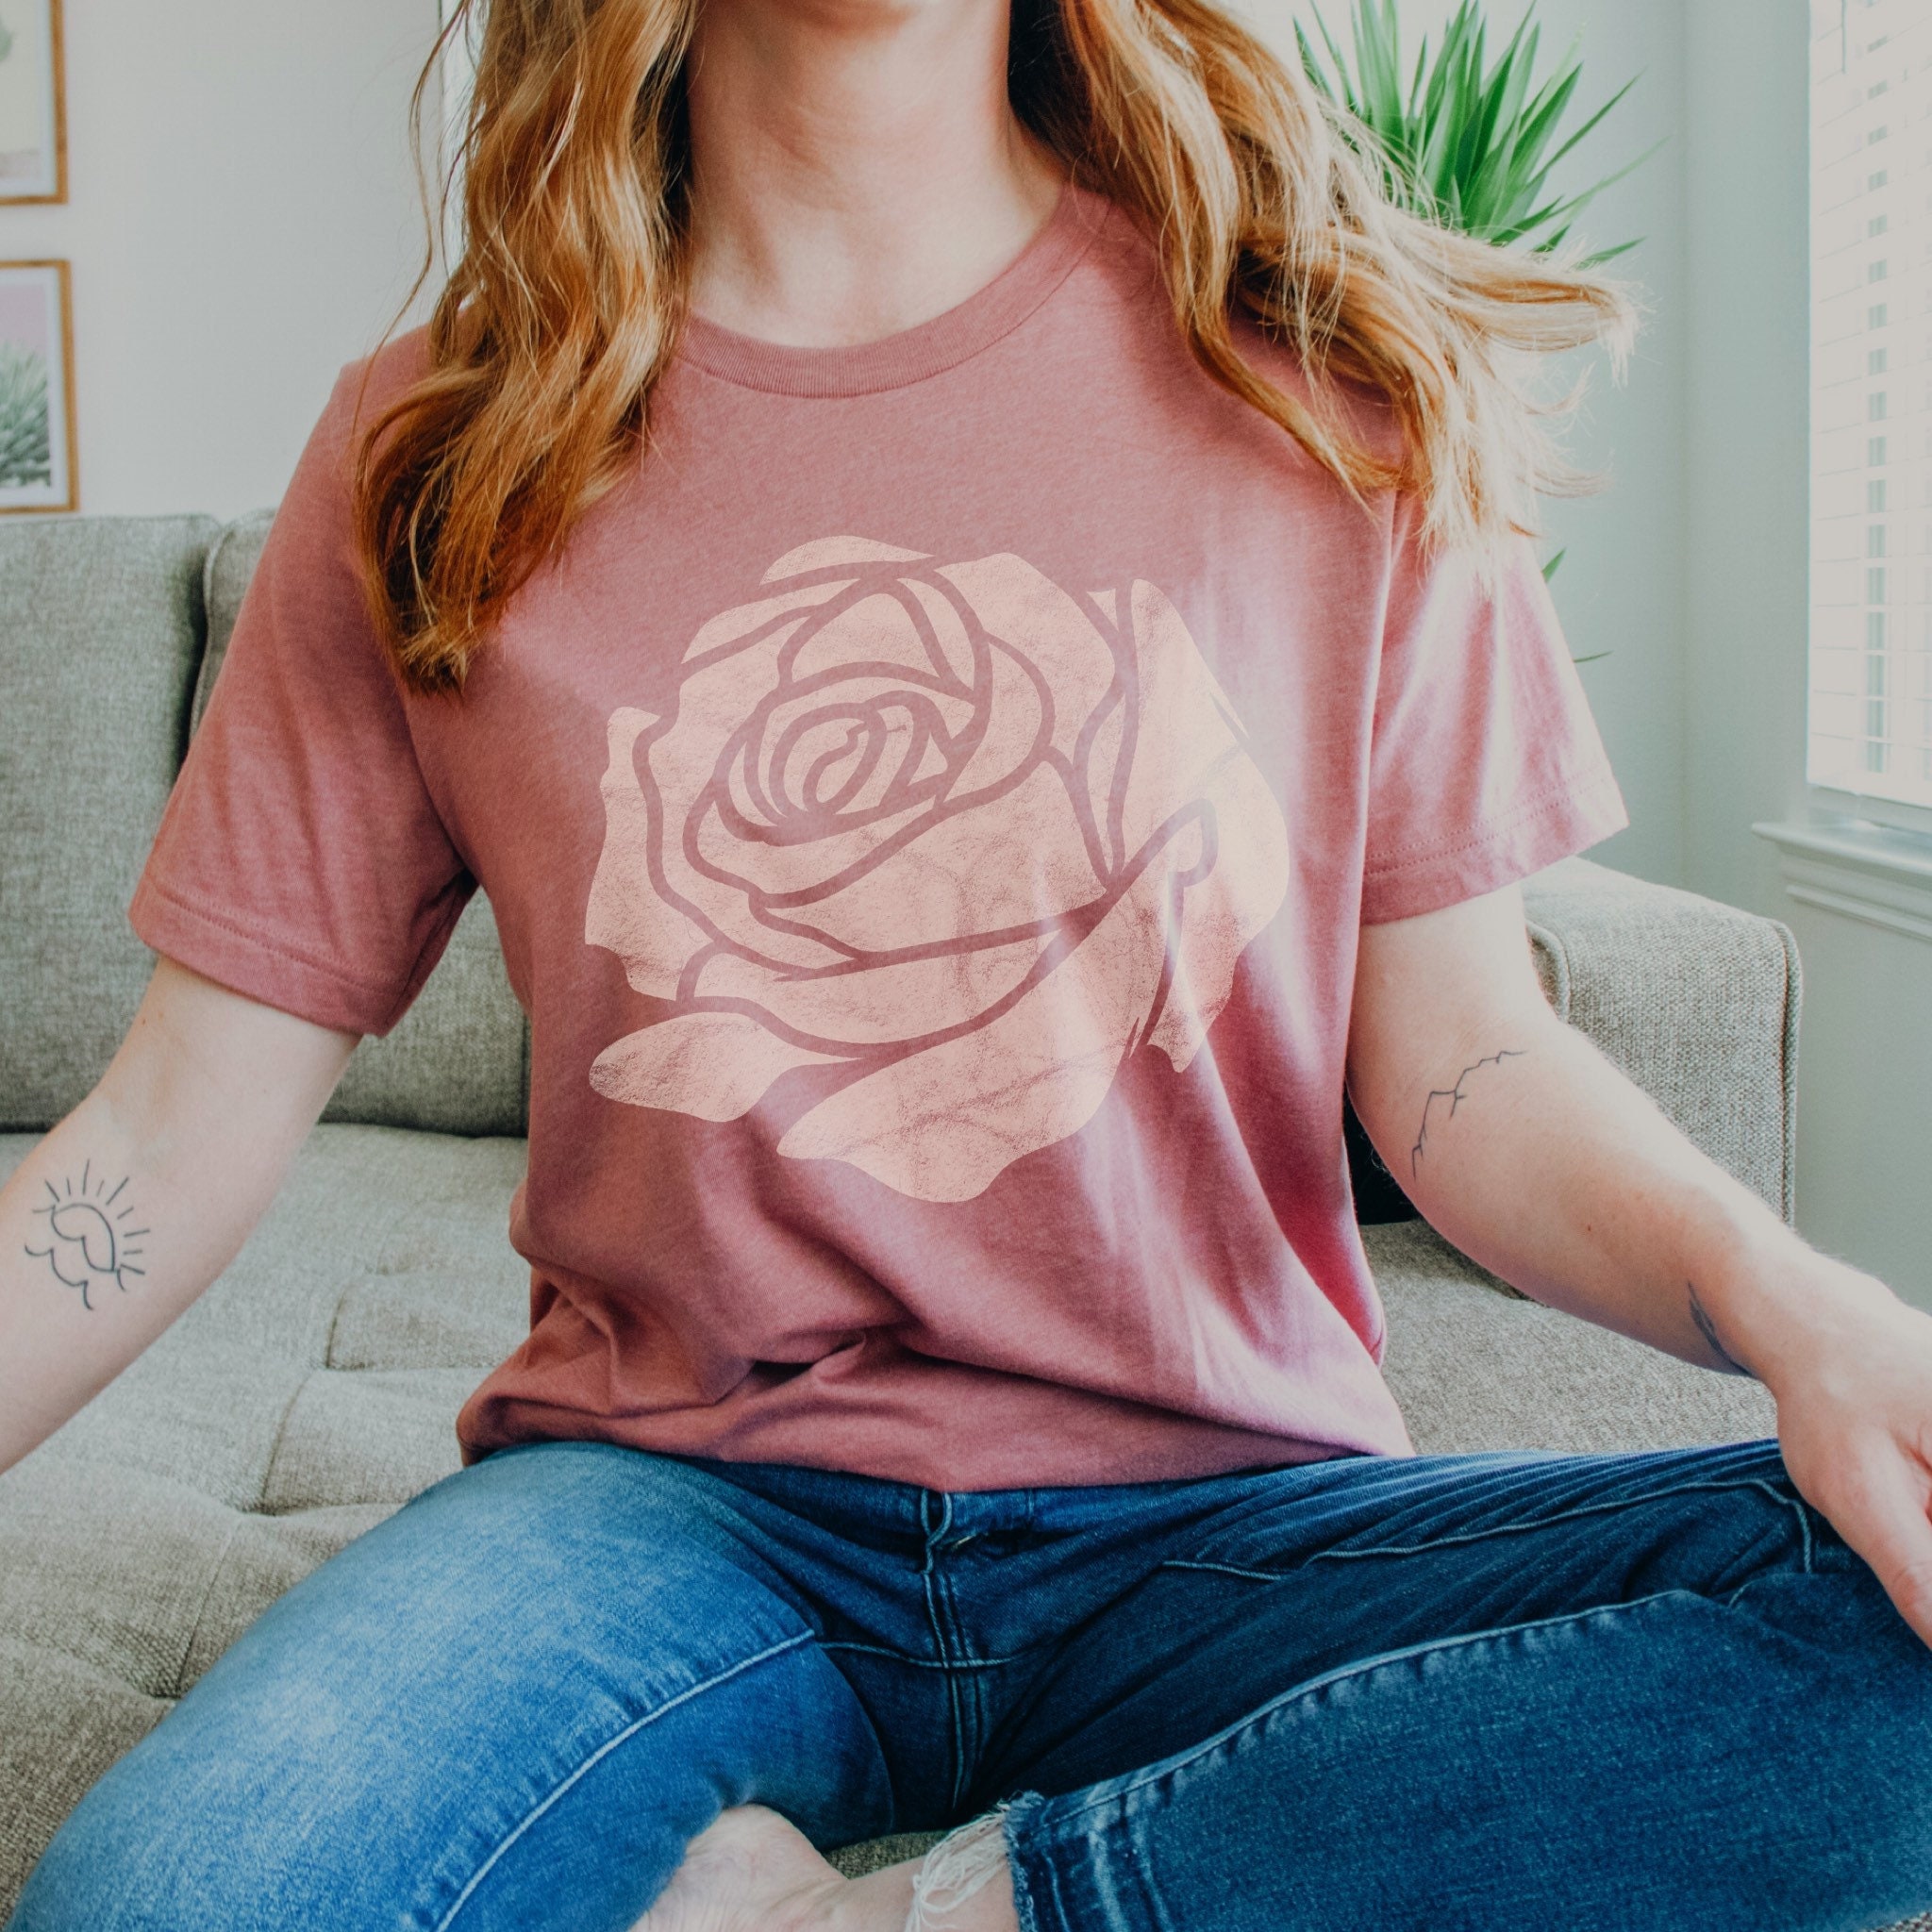 BoredWalk Women's Fleur Fatale Toxic Botanical Chart T-Shirt, Select A Size / White